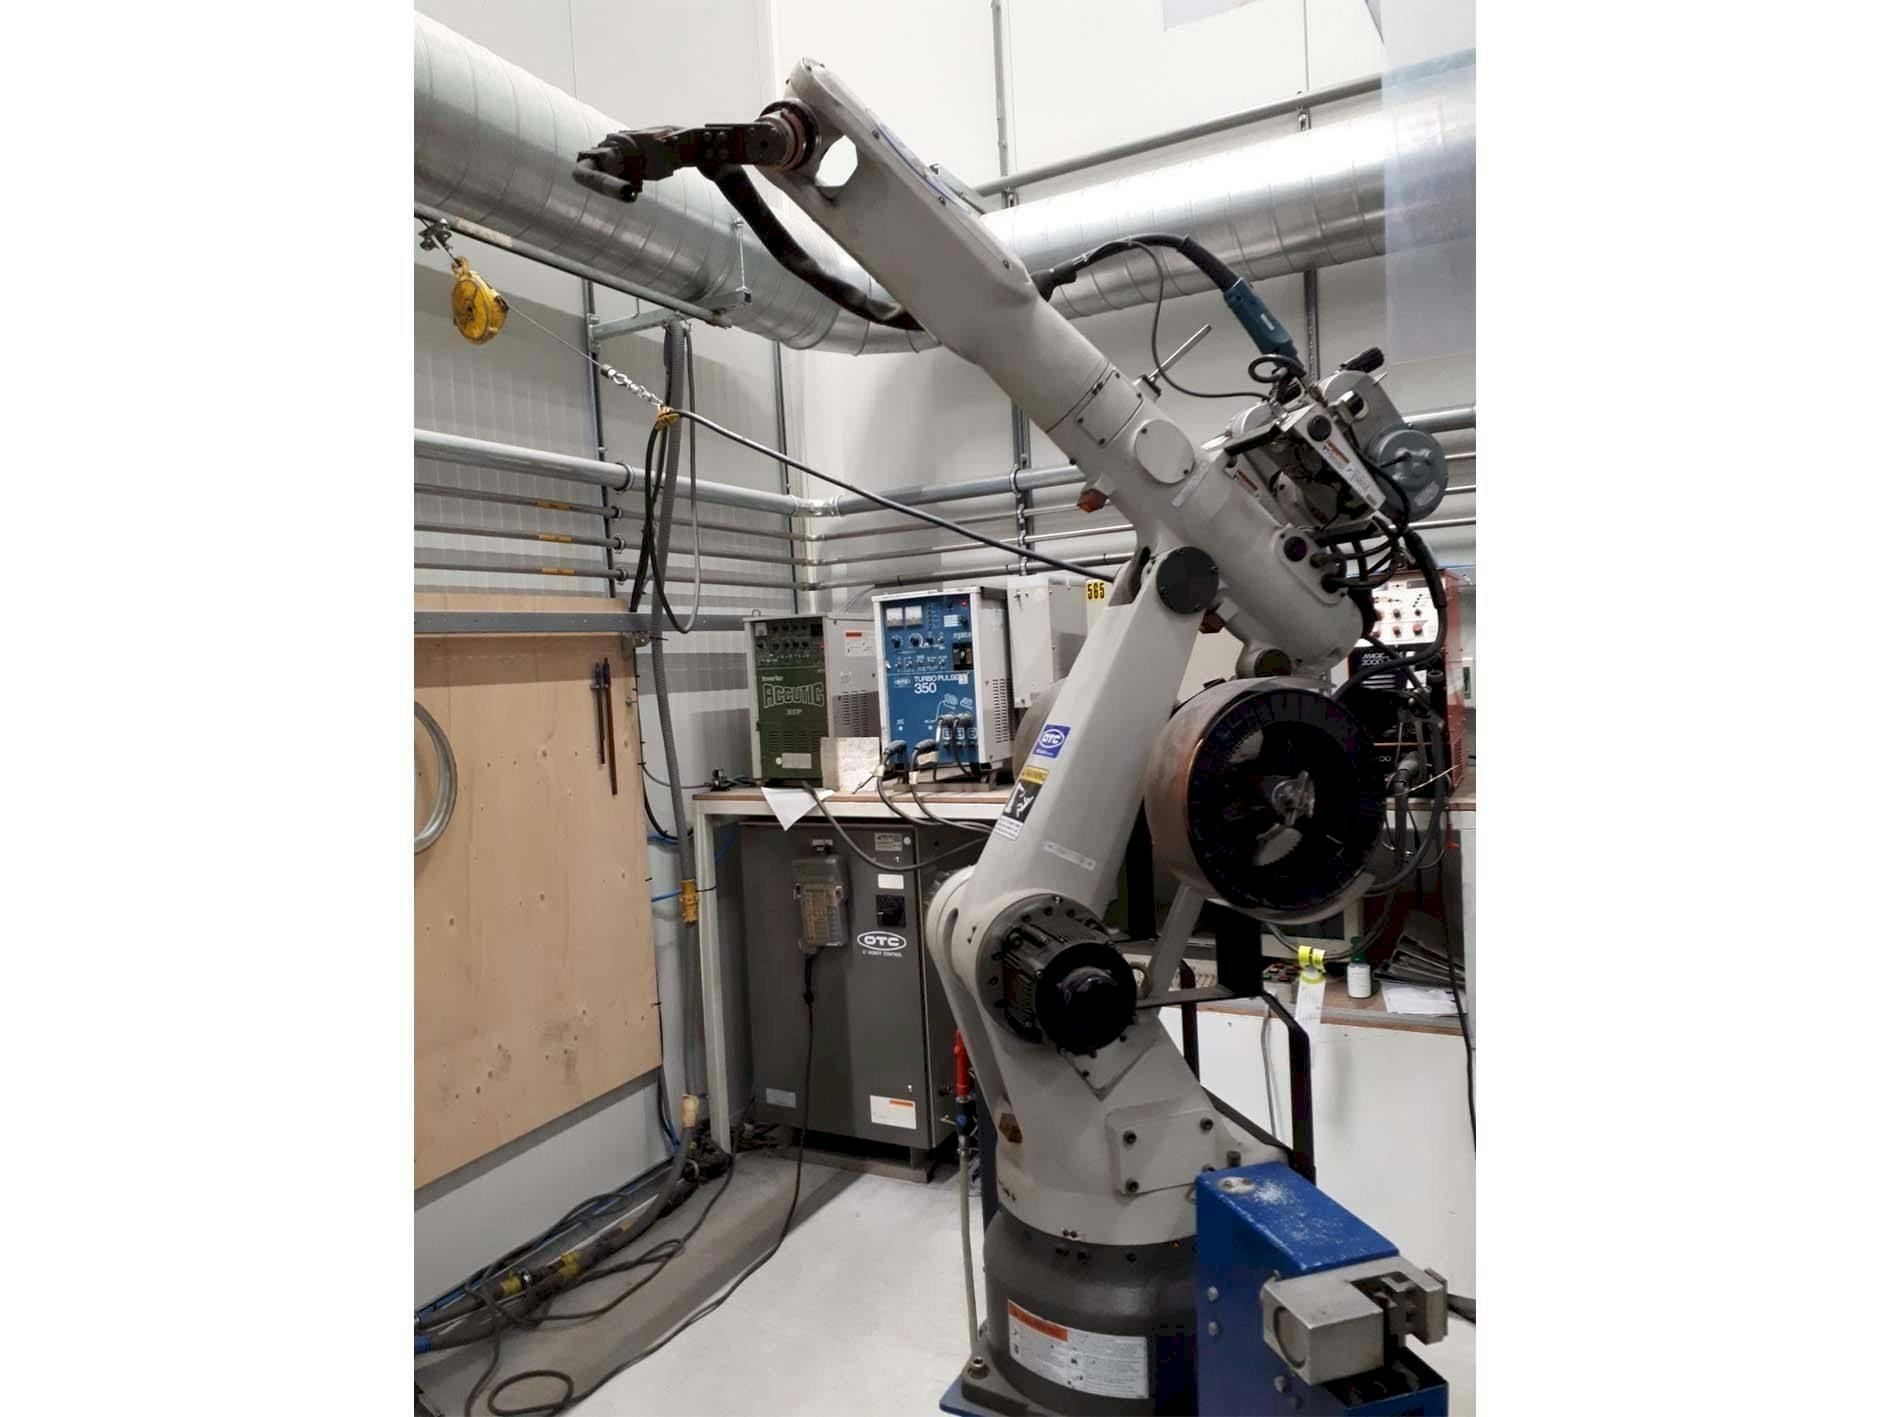 Vooraanzicht  van OTC Daihen Welding Robot  machine